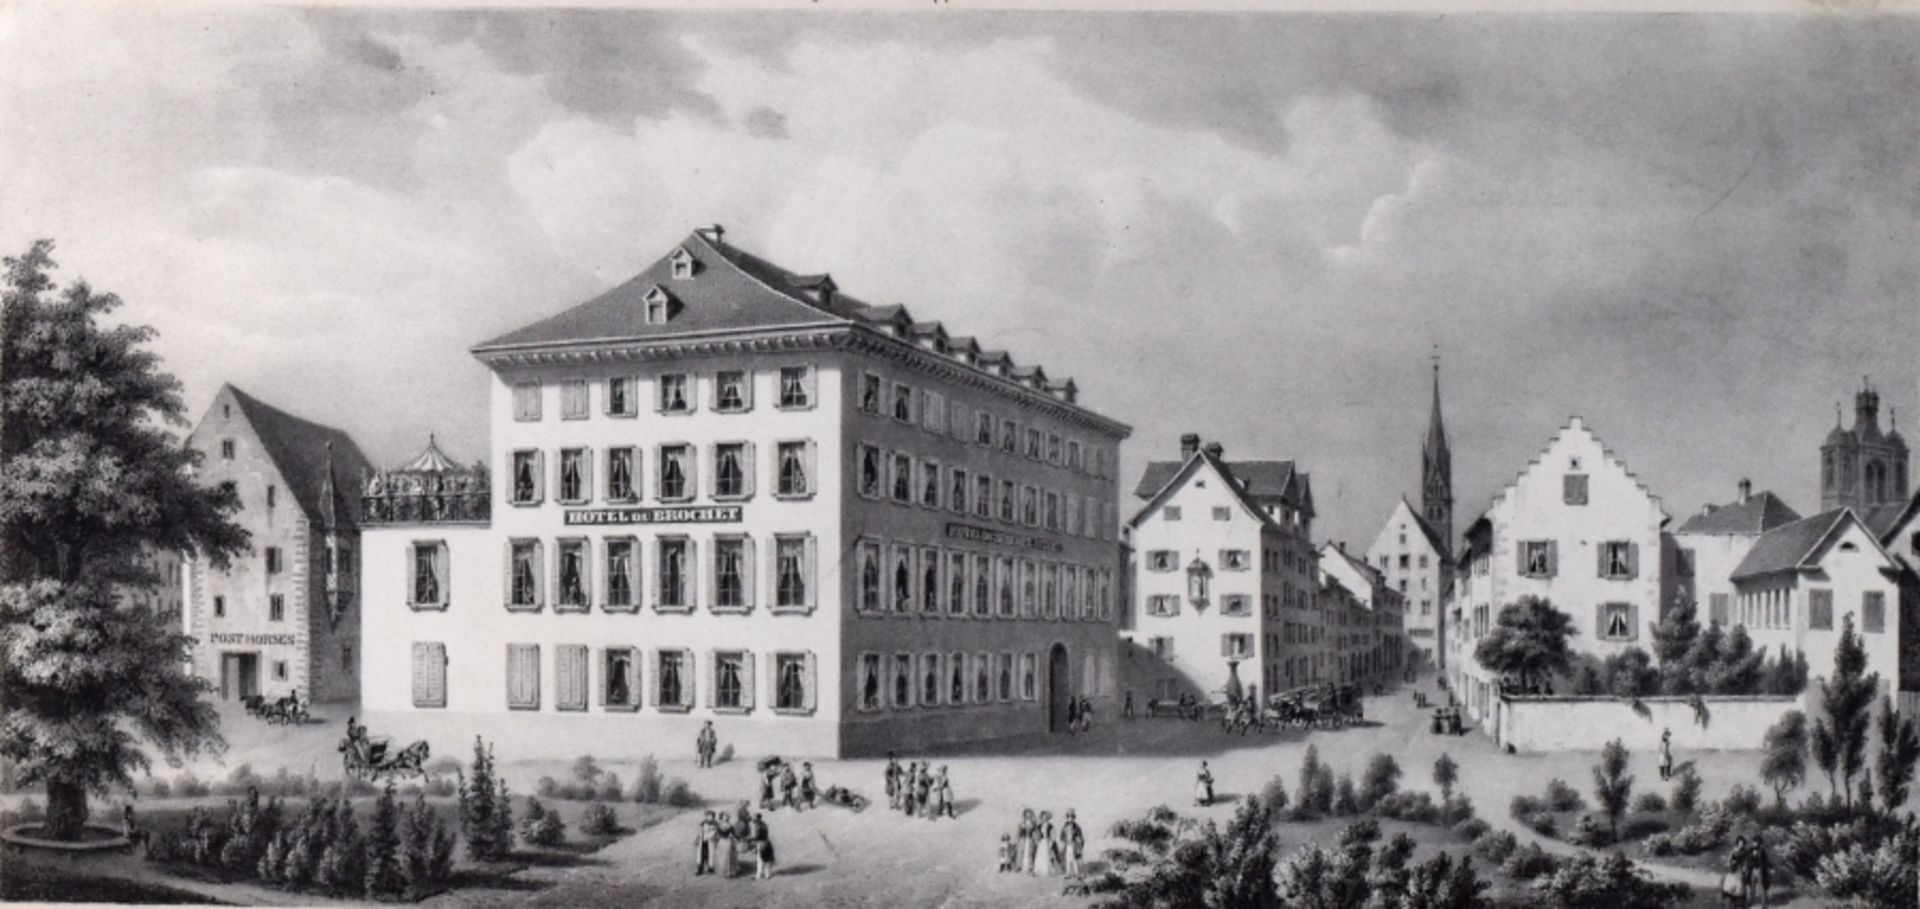 HOTEL HECHT KONSTANZ um 1840 von A. F. Pecht